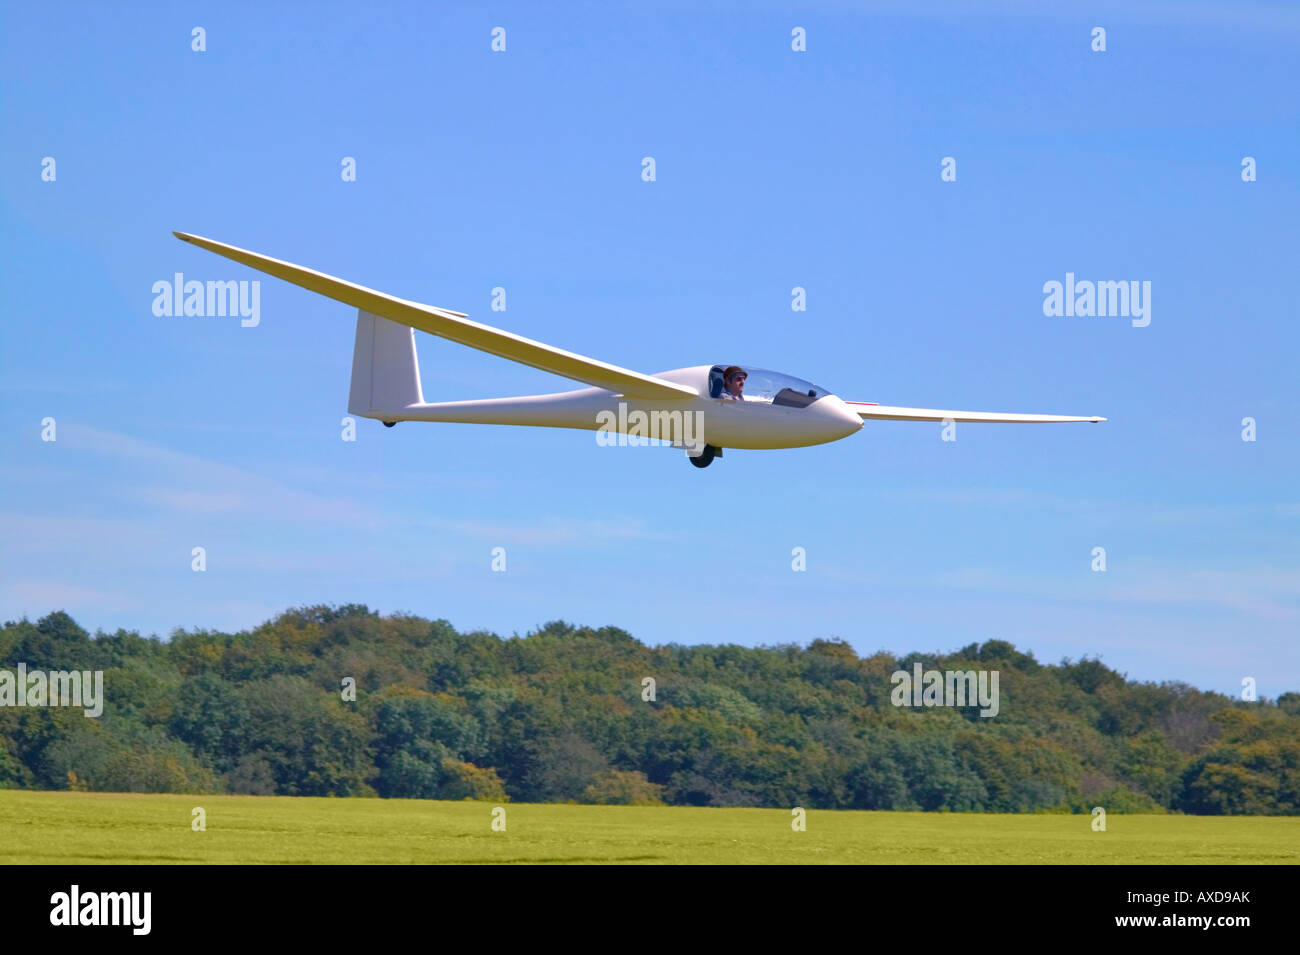 Ein modernes Segelflugzeug kurz vor dem landen auf einem Rasen-Flugplatz Stockfoto